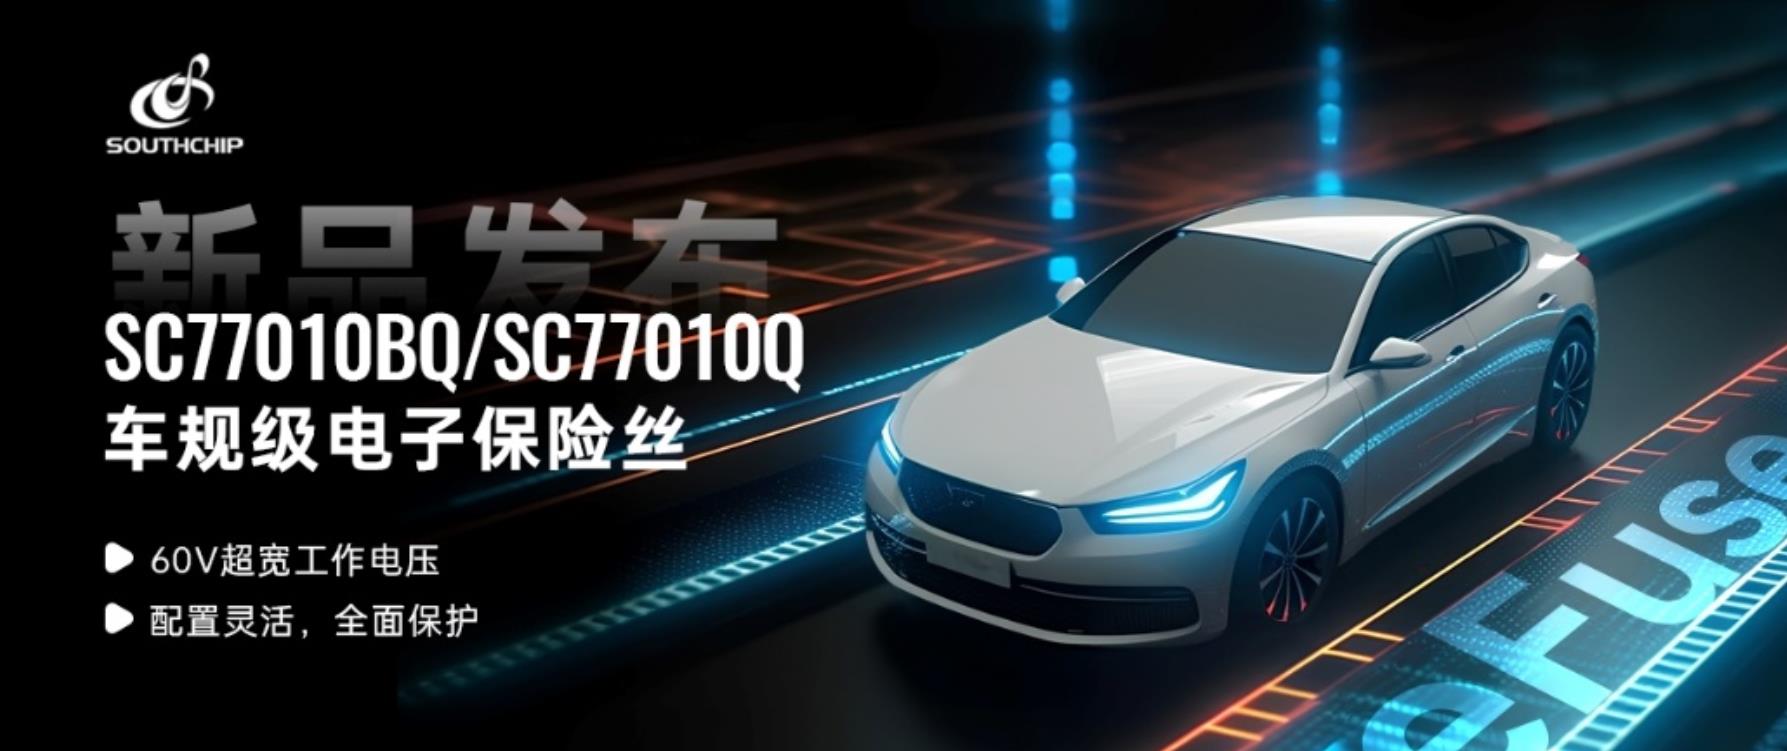 南芯科技推出车规级电子保险丝SC77010BQ